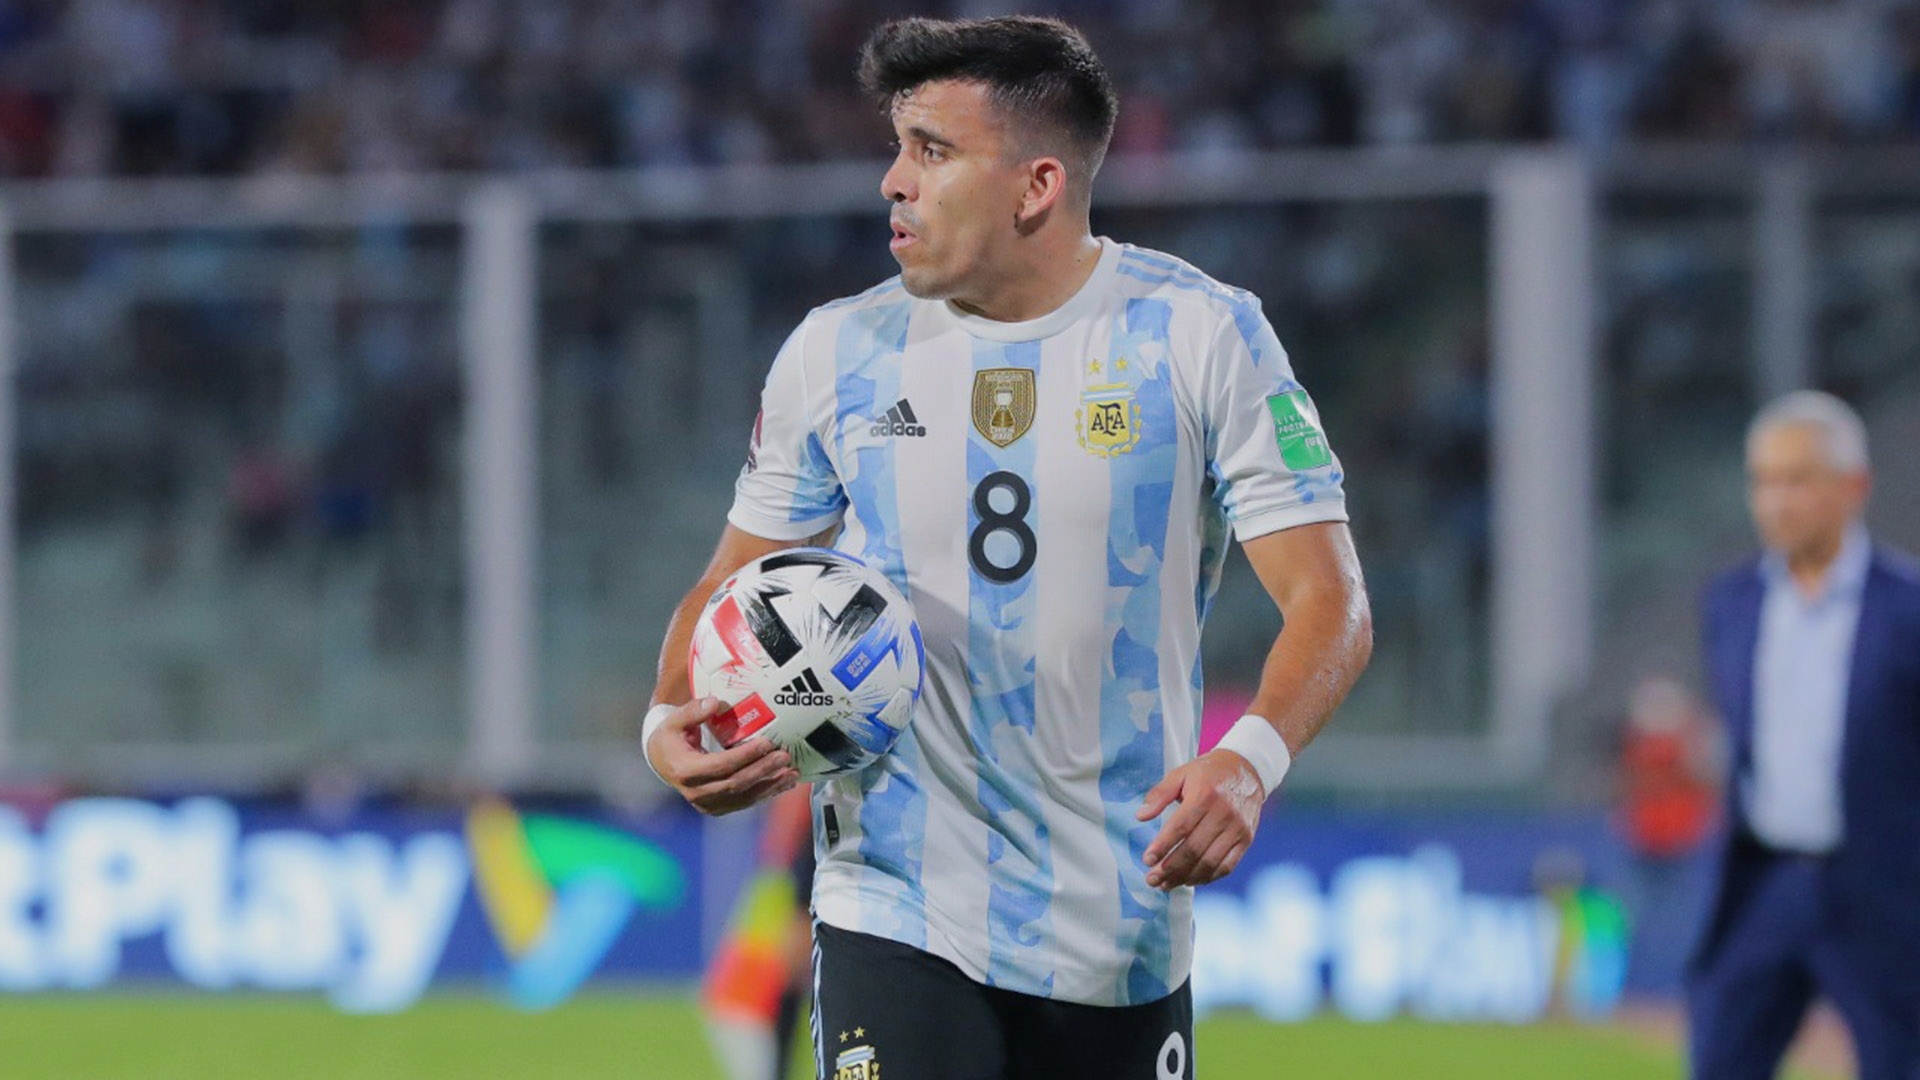 Qué jugadores de la Selección argentina corren riesgo de suspensión por acumulación de amarillas el Mundial Qatar 2022? Goal.com Espana